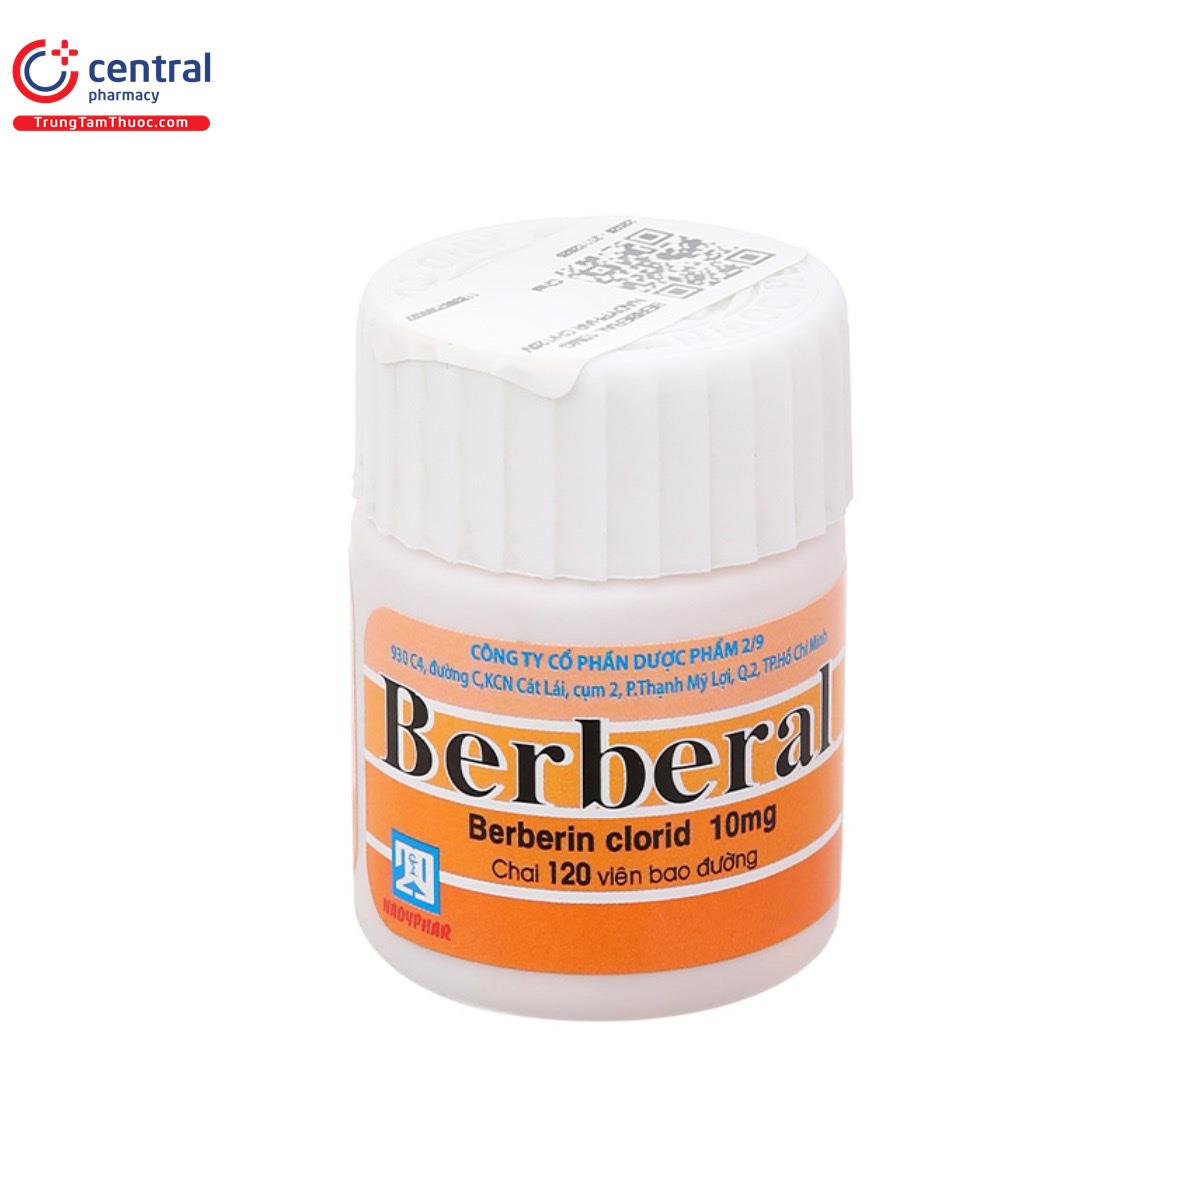 berberal 3 O5610